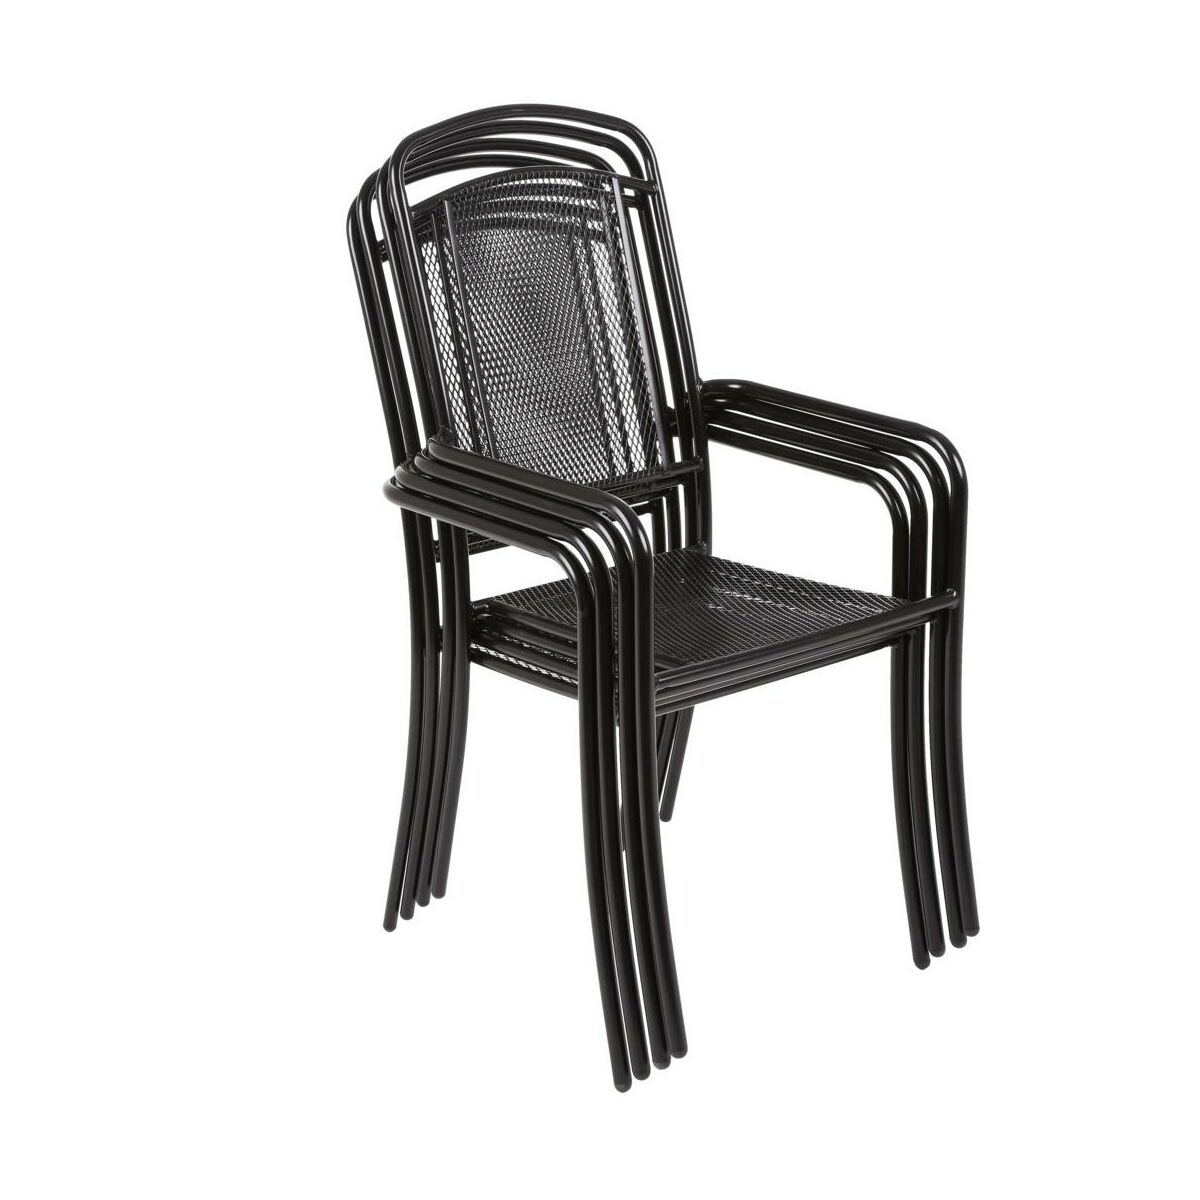 Krzeslo Ogrodowe Metalowe Bolonia Krzesla Fotele Lawki Ogrodowe W Atrakcyjnej Cenie W Sklepach Leroy Merlin